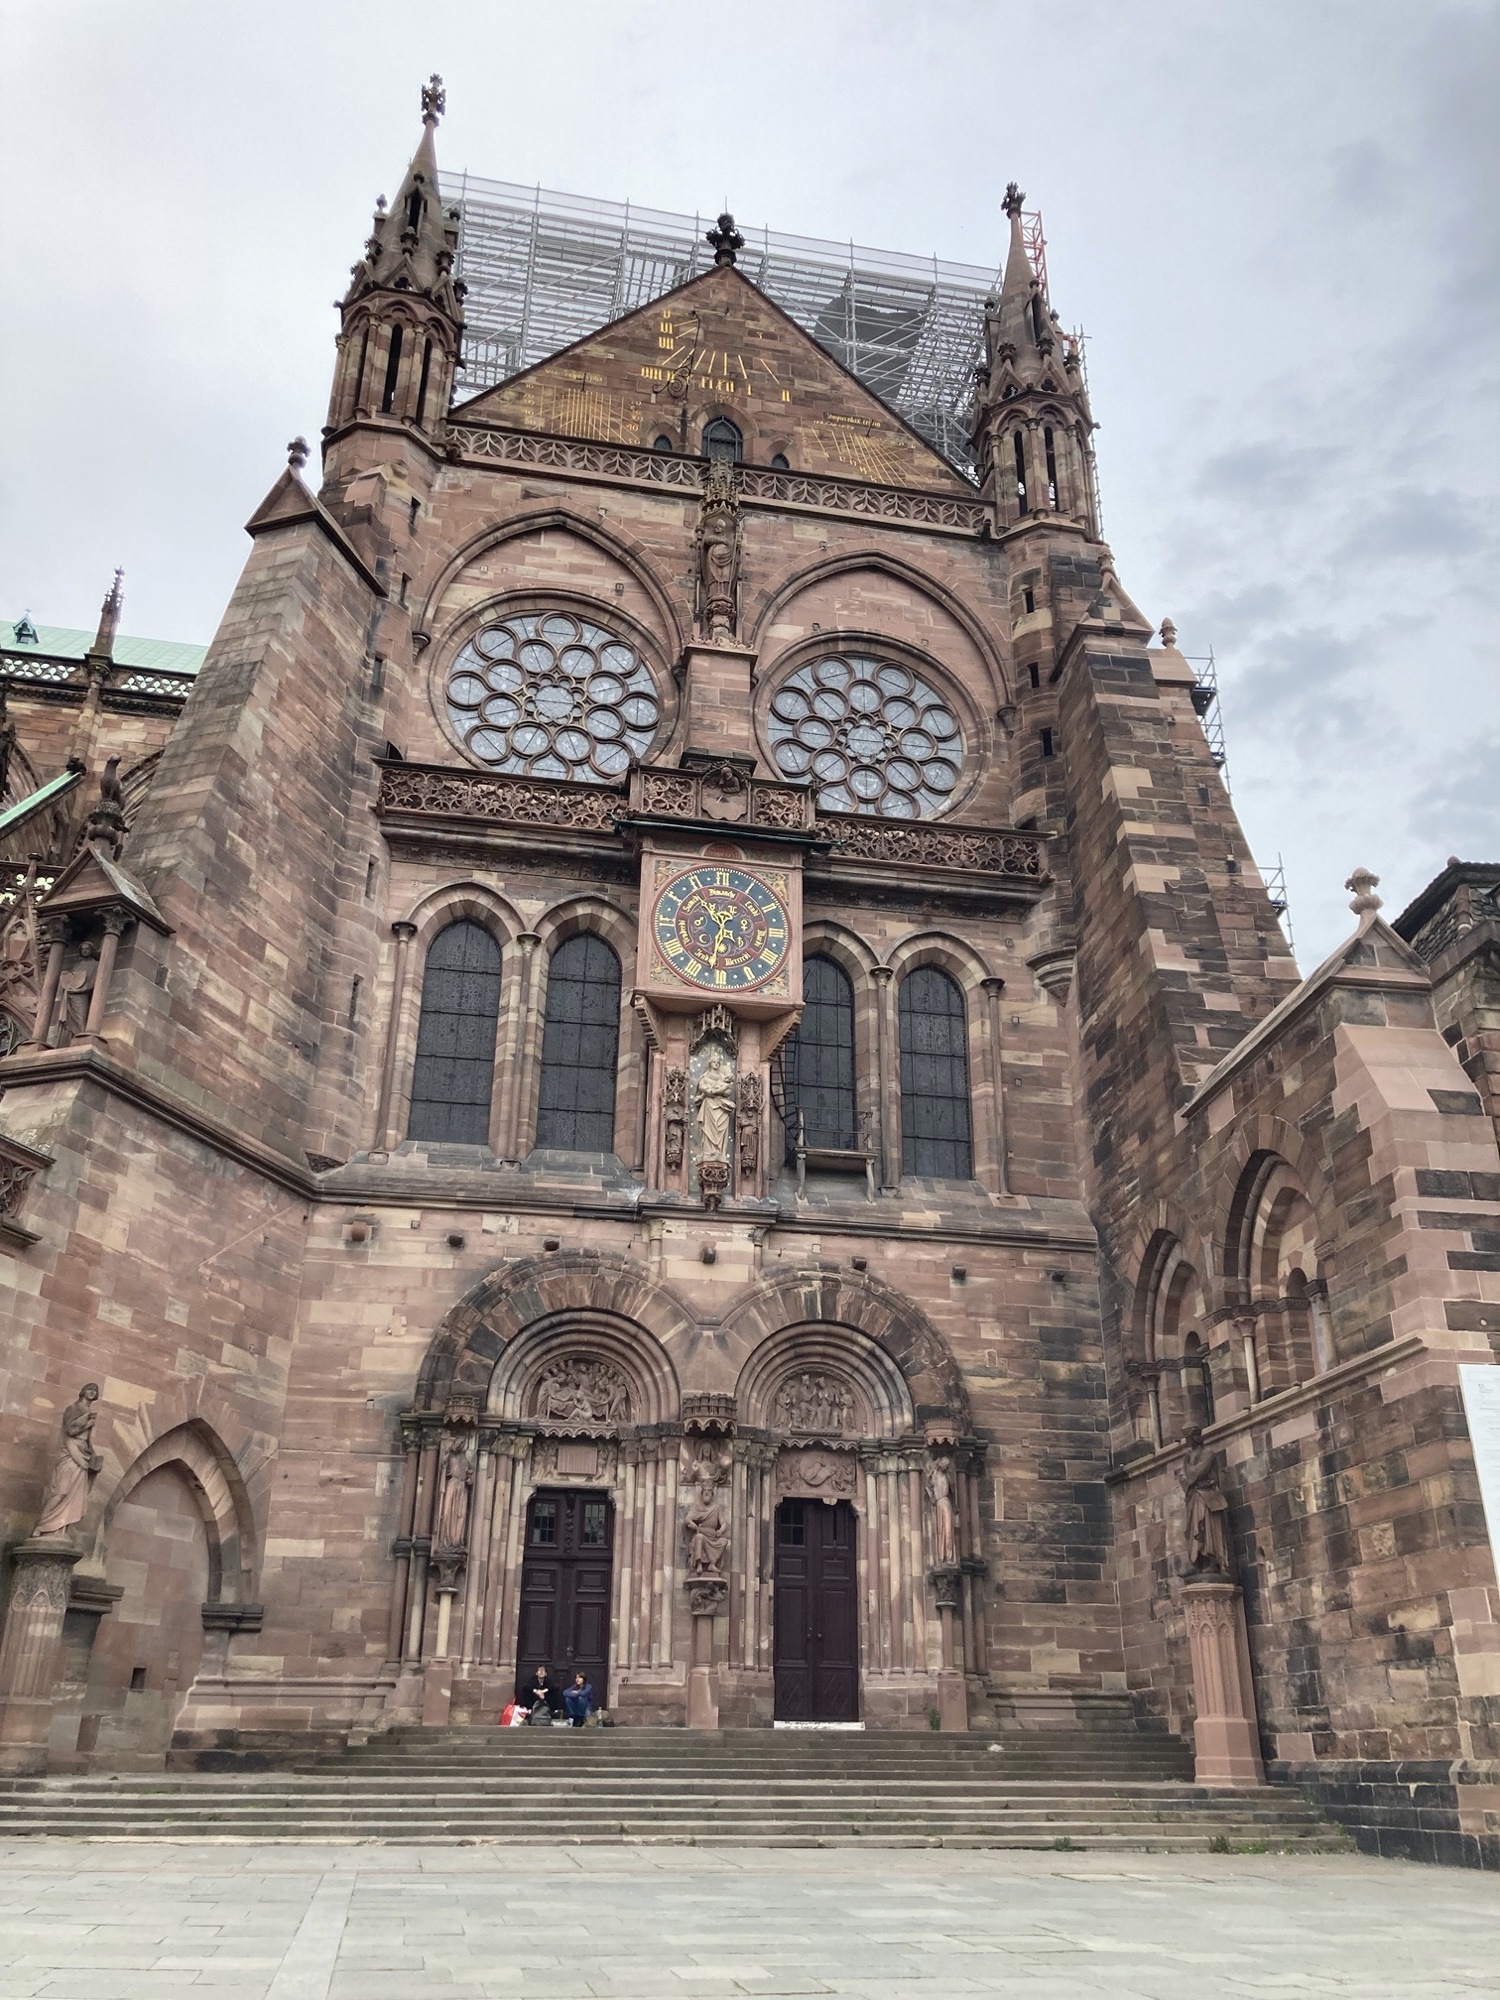 Südquerhausportal des Strasbourg Münster, lt. Wikipedia: „romanische Portale, frühgotische Spitzbogenfenster, Rosetten feines Maßwerk“